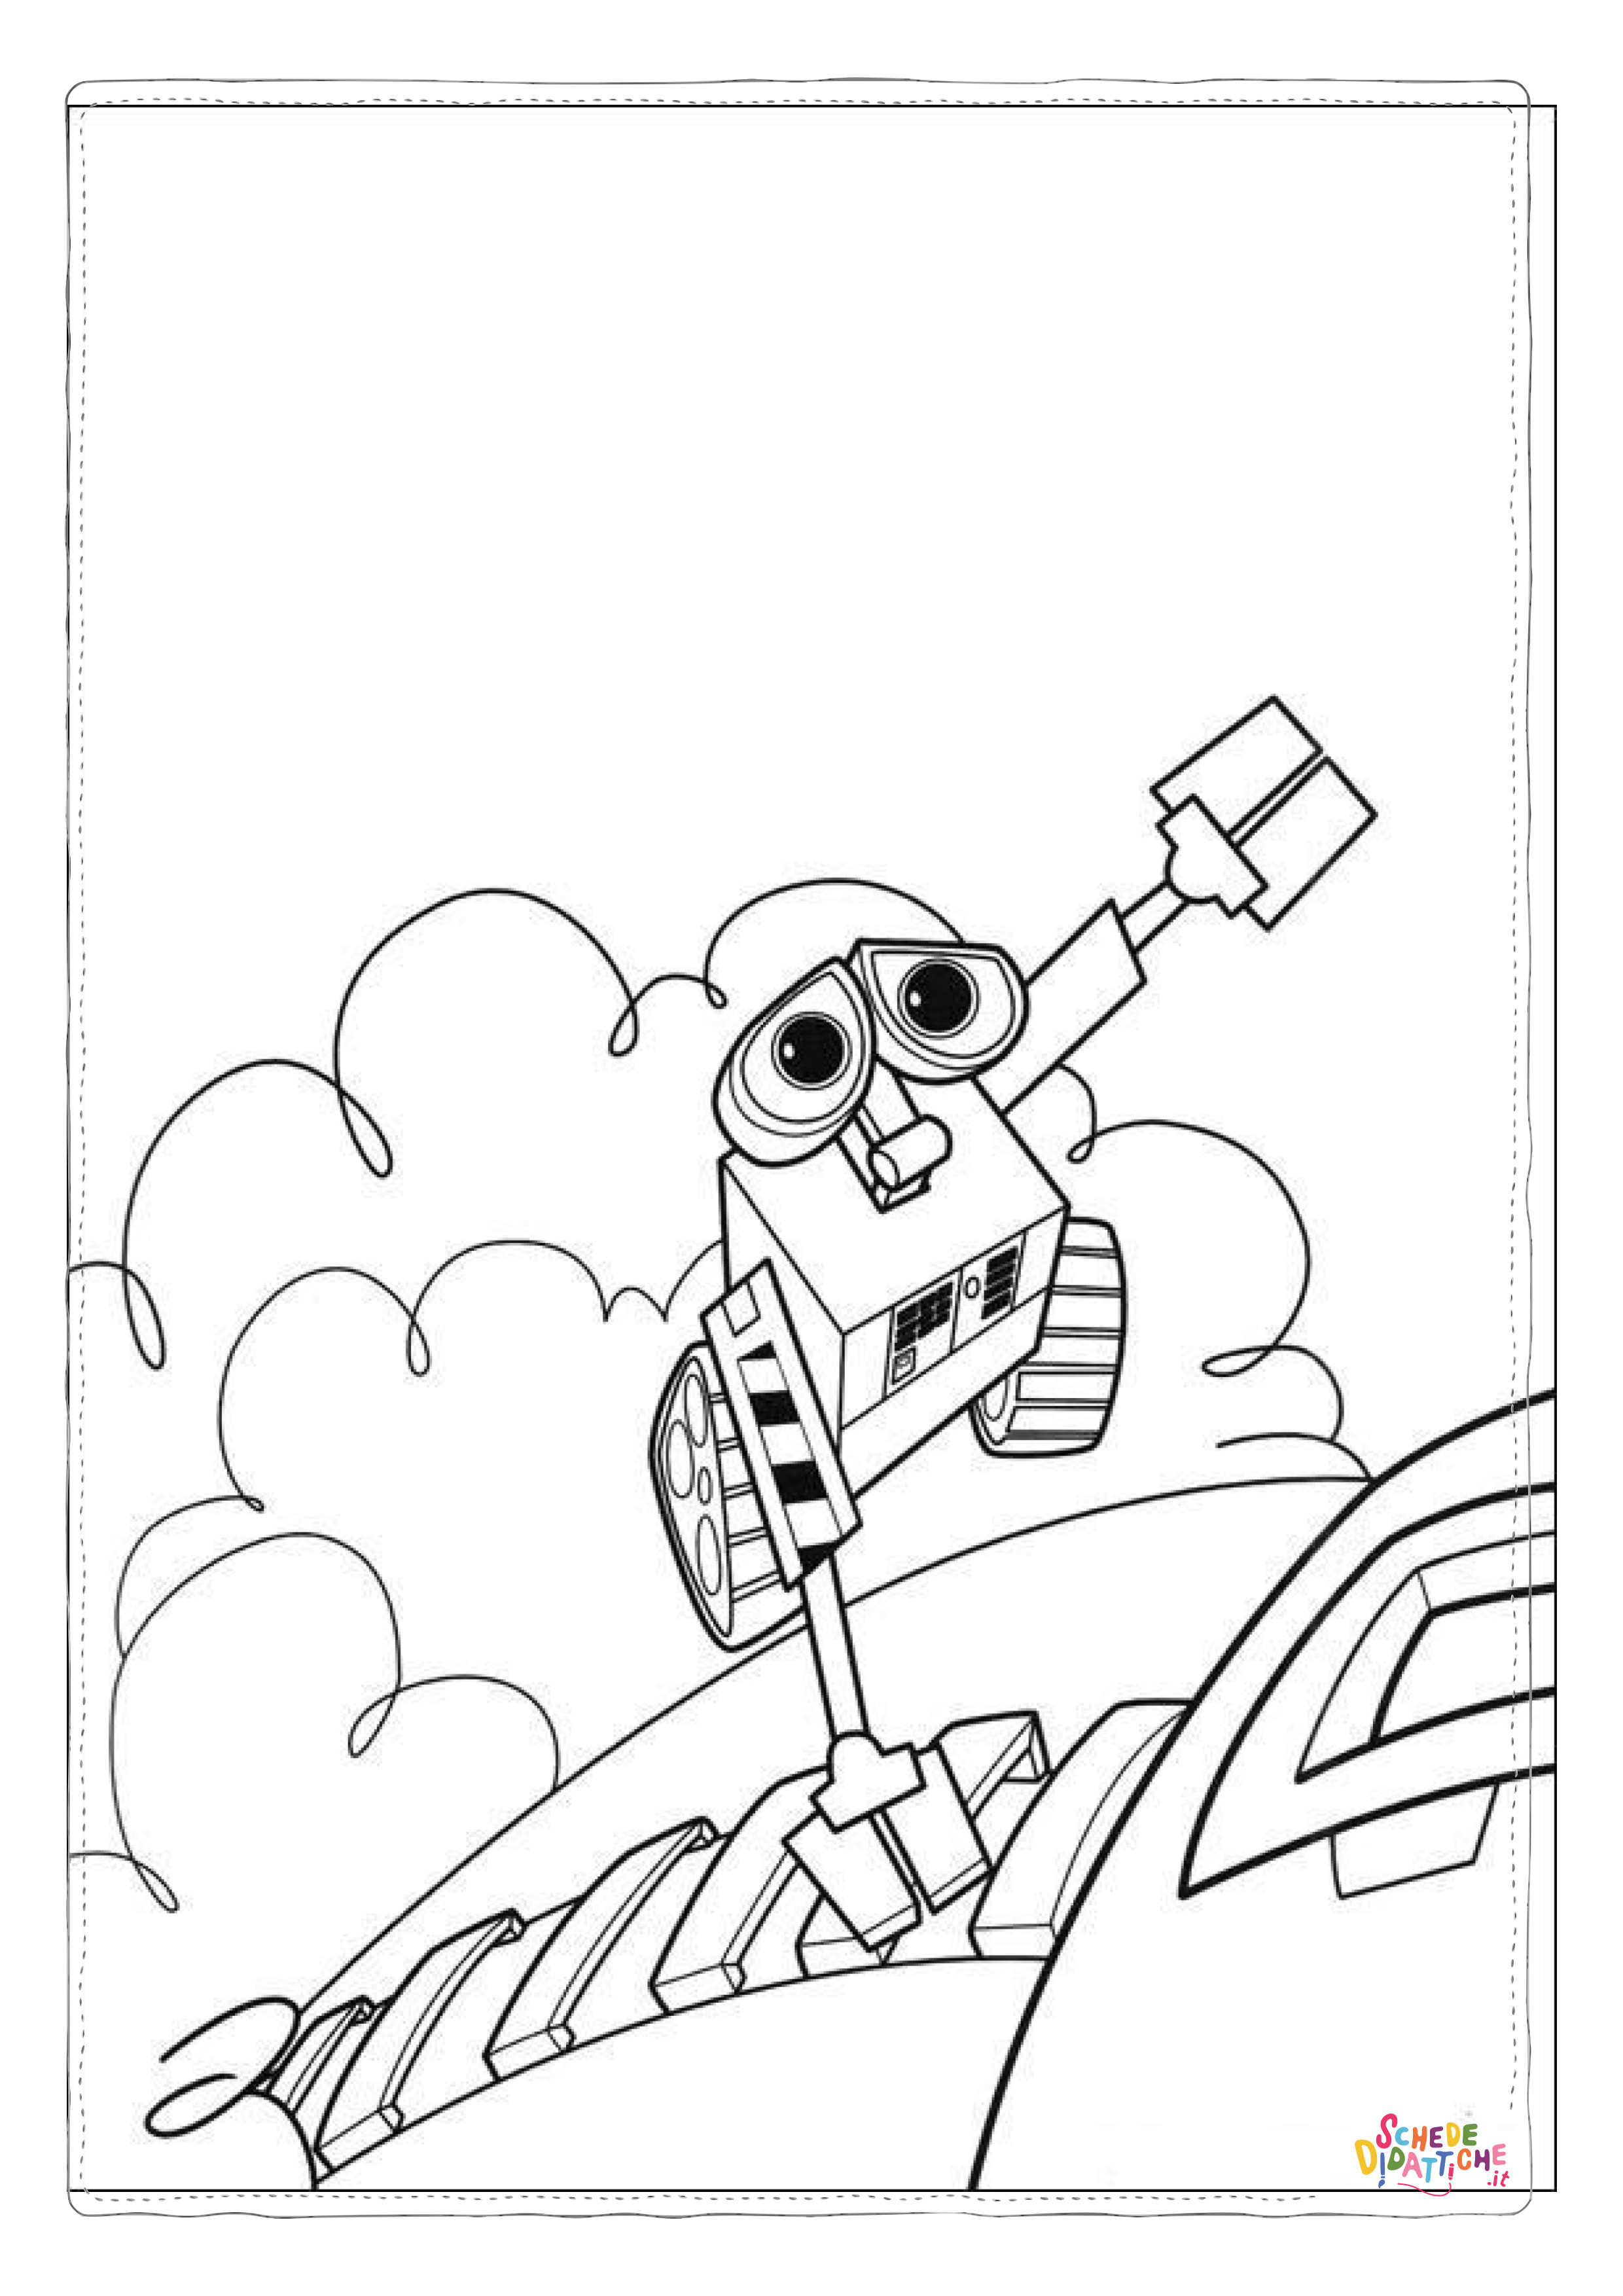 Disegno di Wall-E da stampare e colorare 24